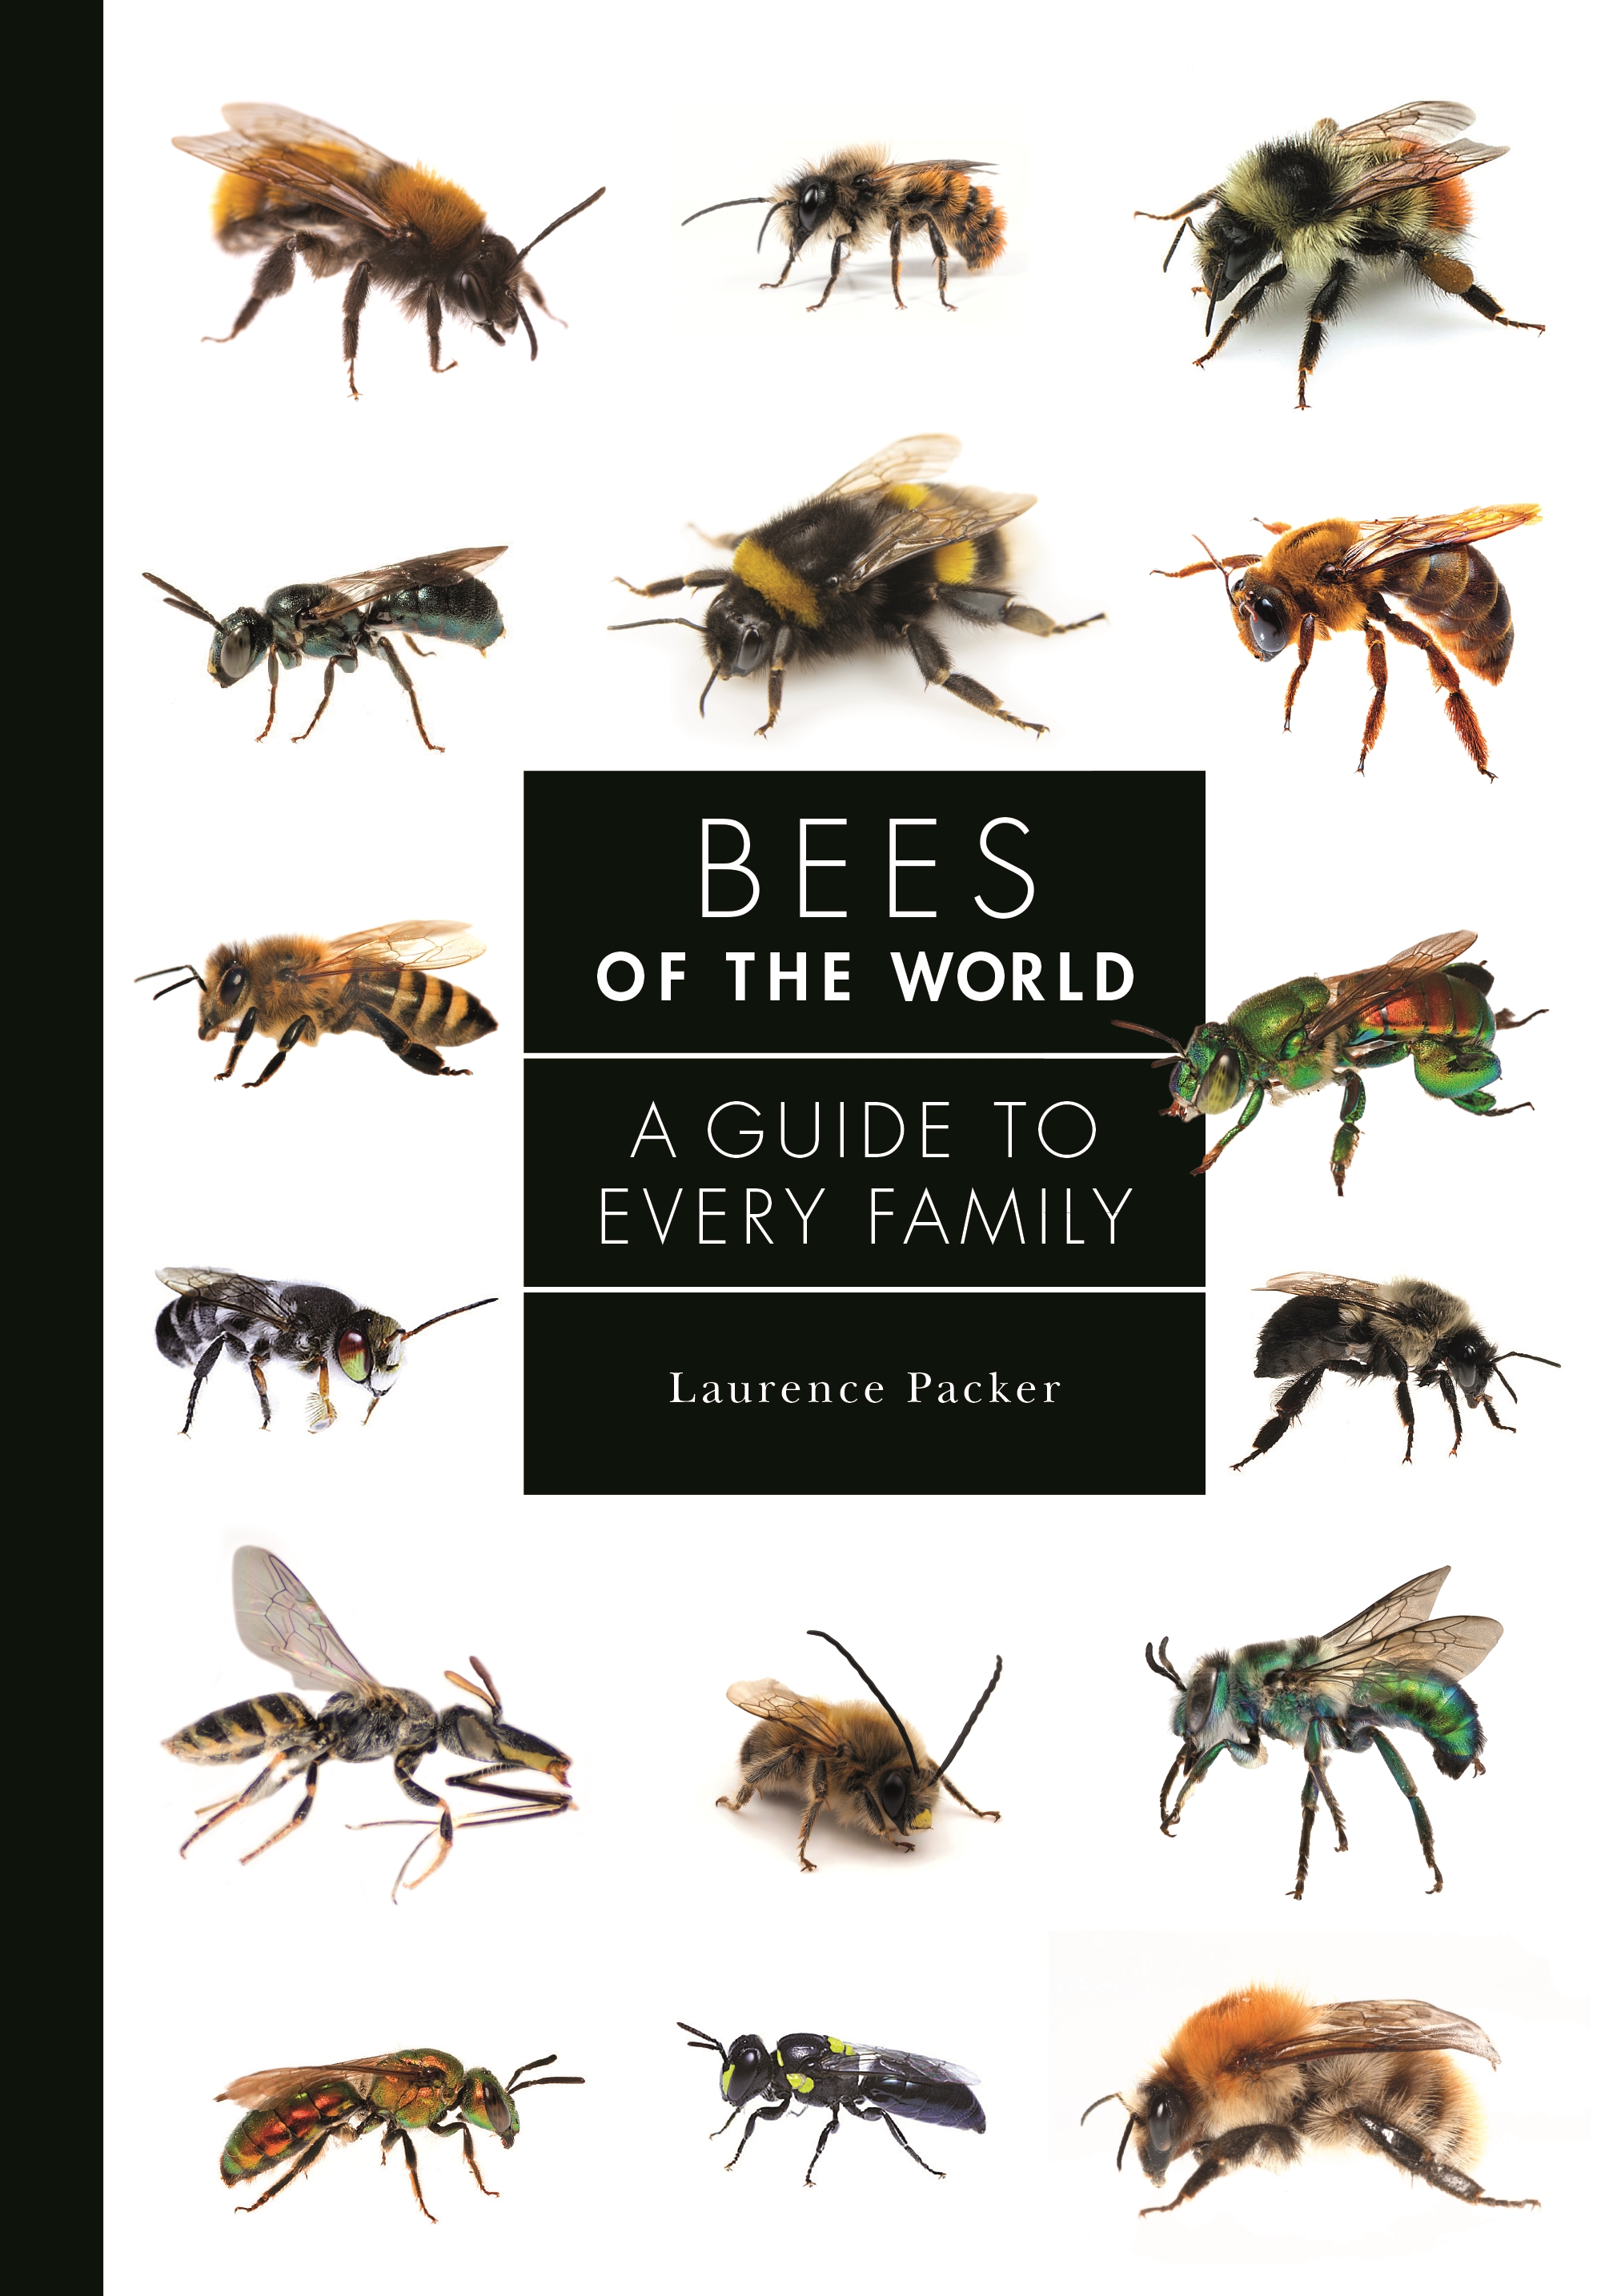 Anatomy Of A Honey Bee - Beginner's Guide Bee Professor